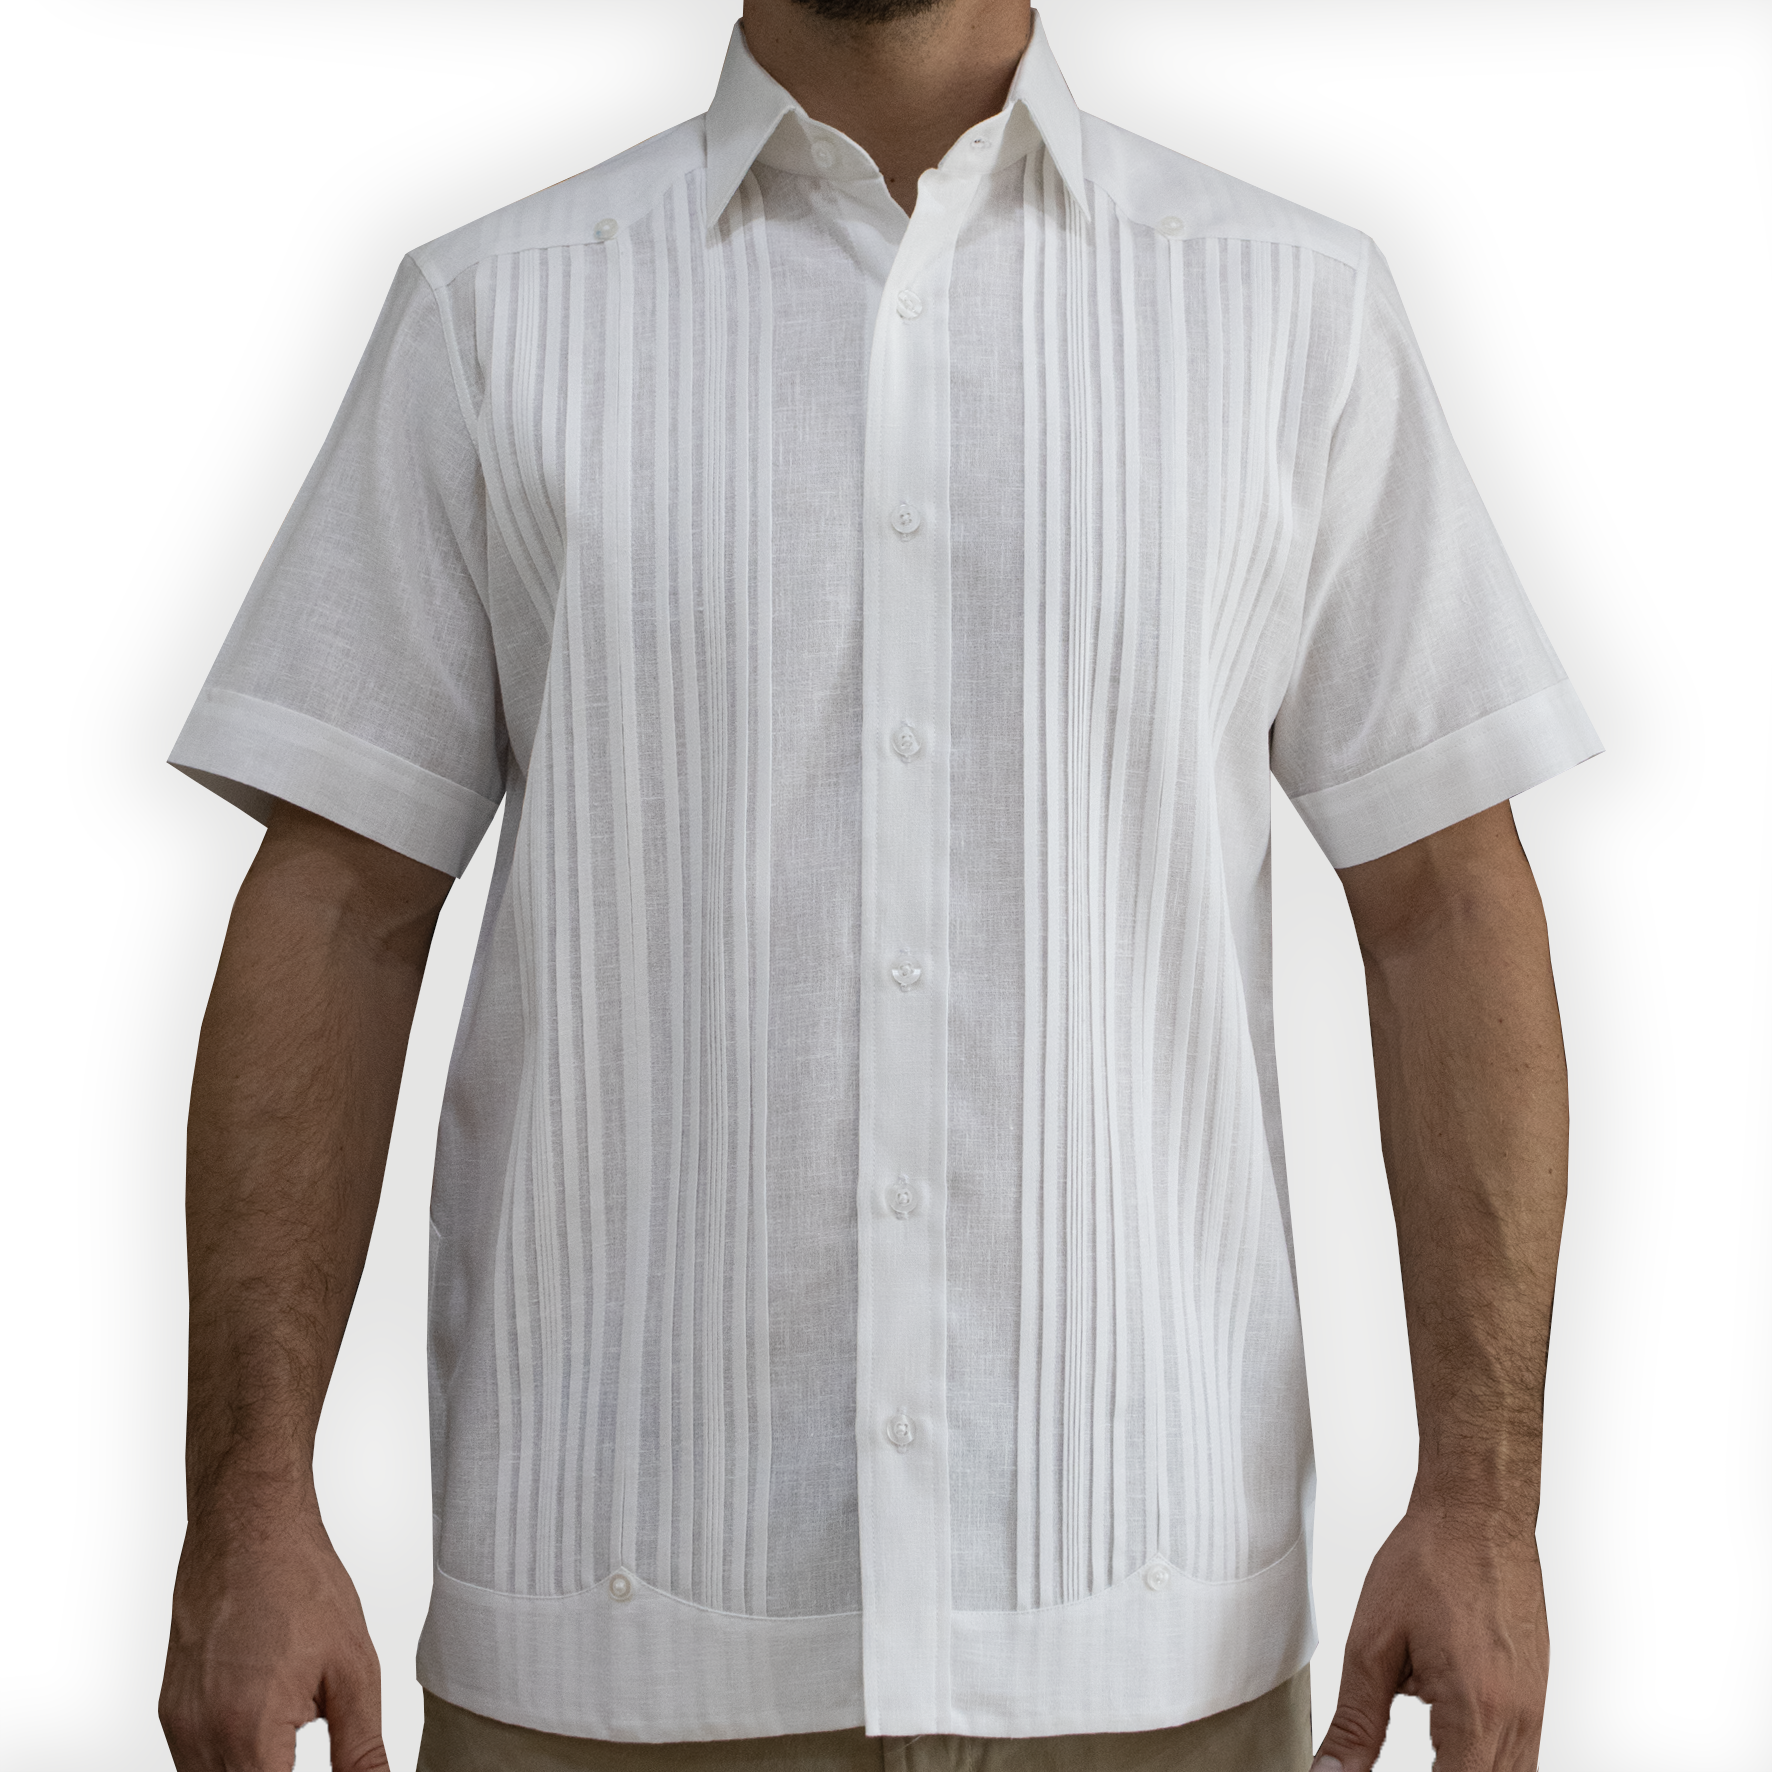 Guayabera shirt white